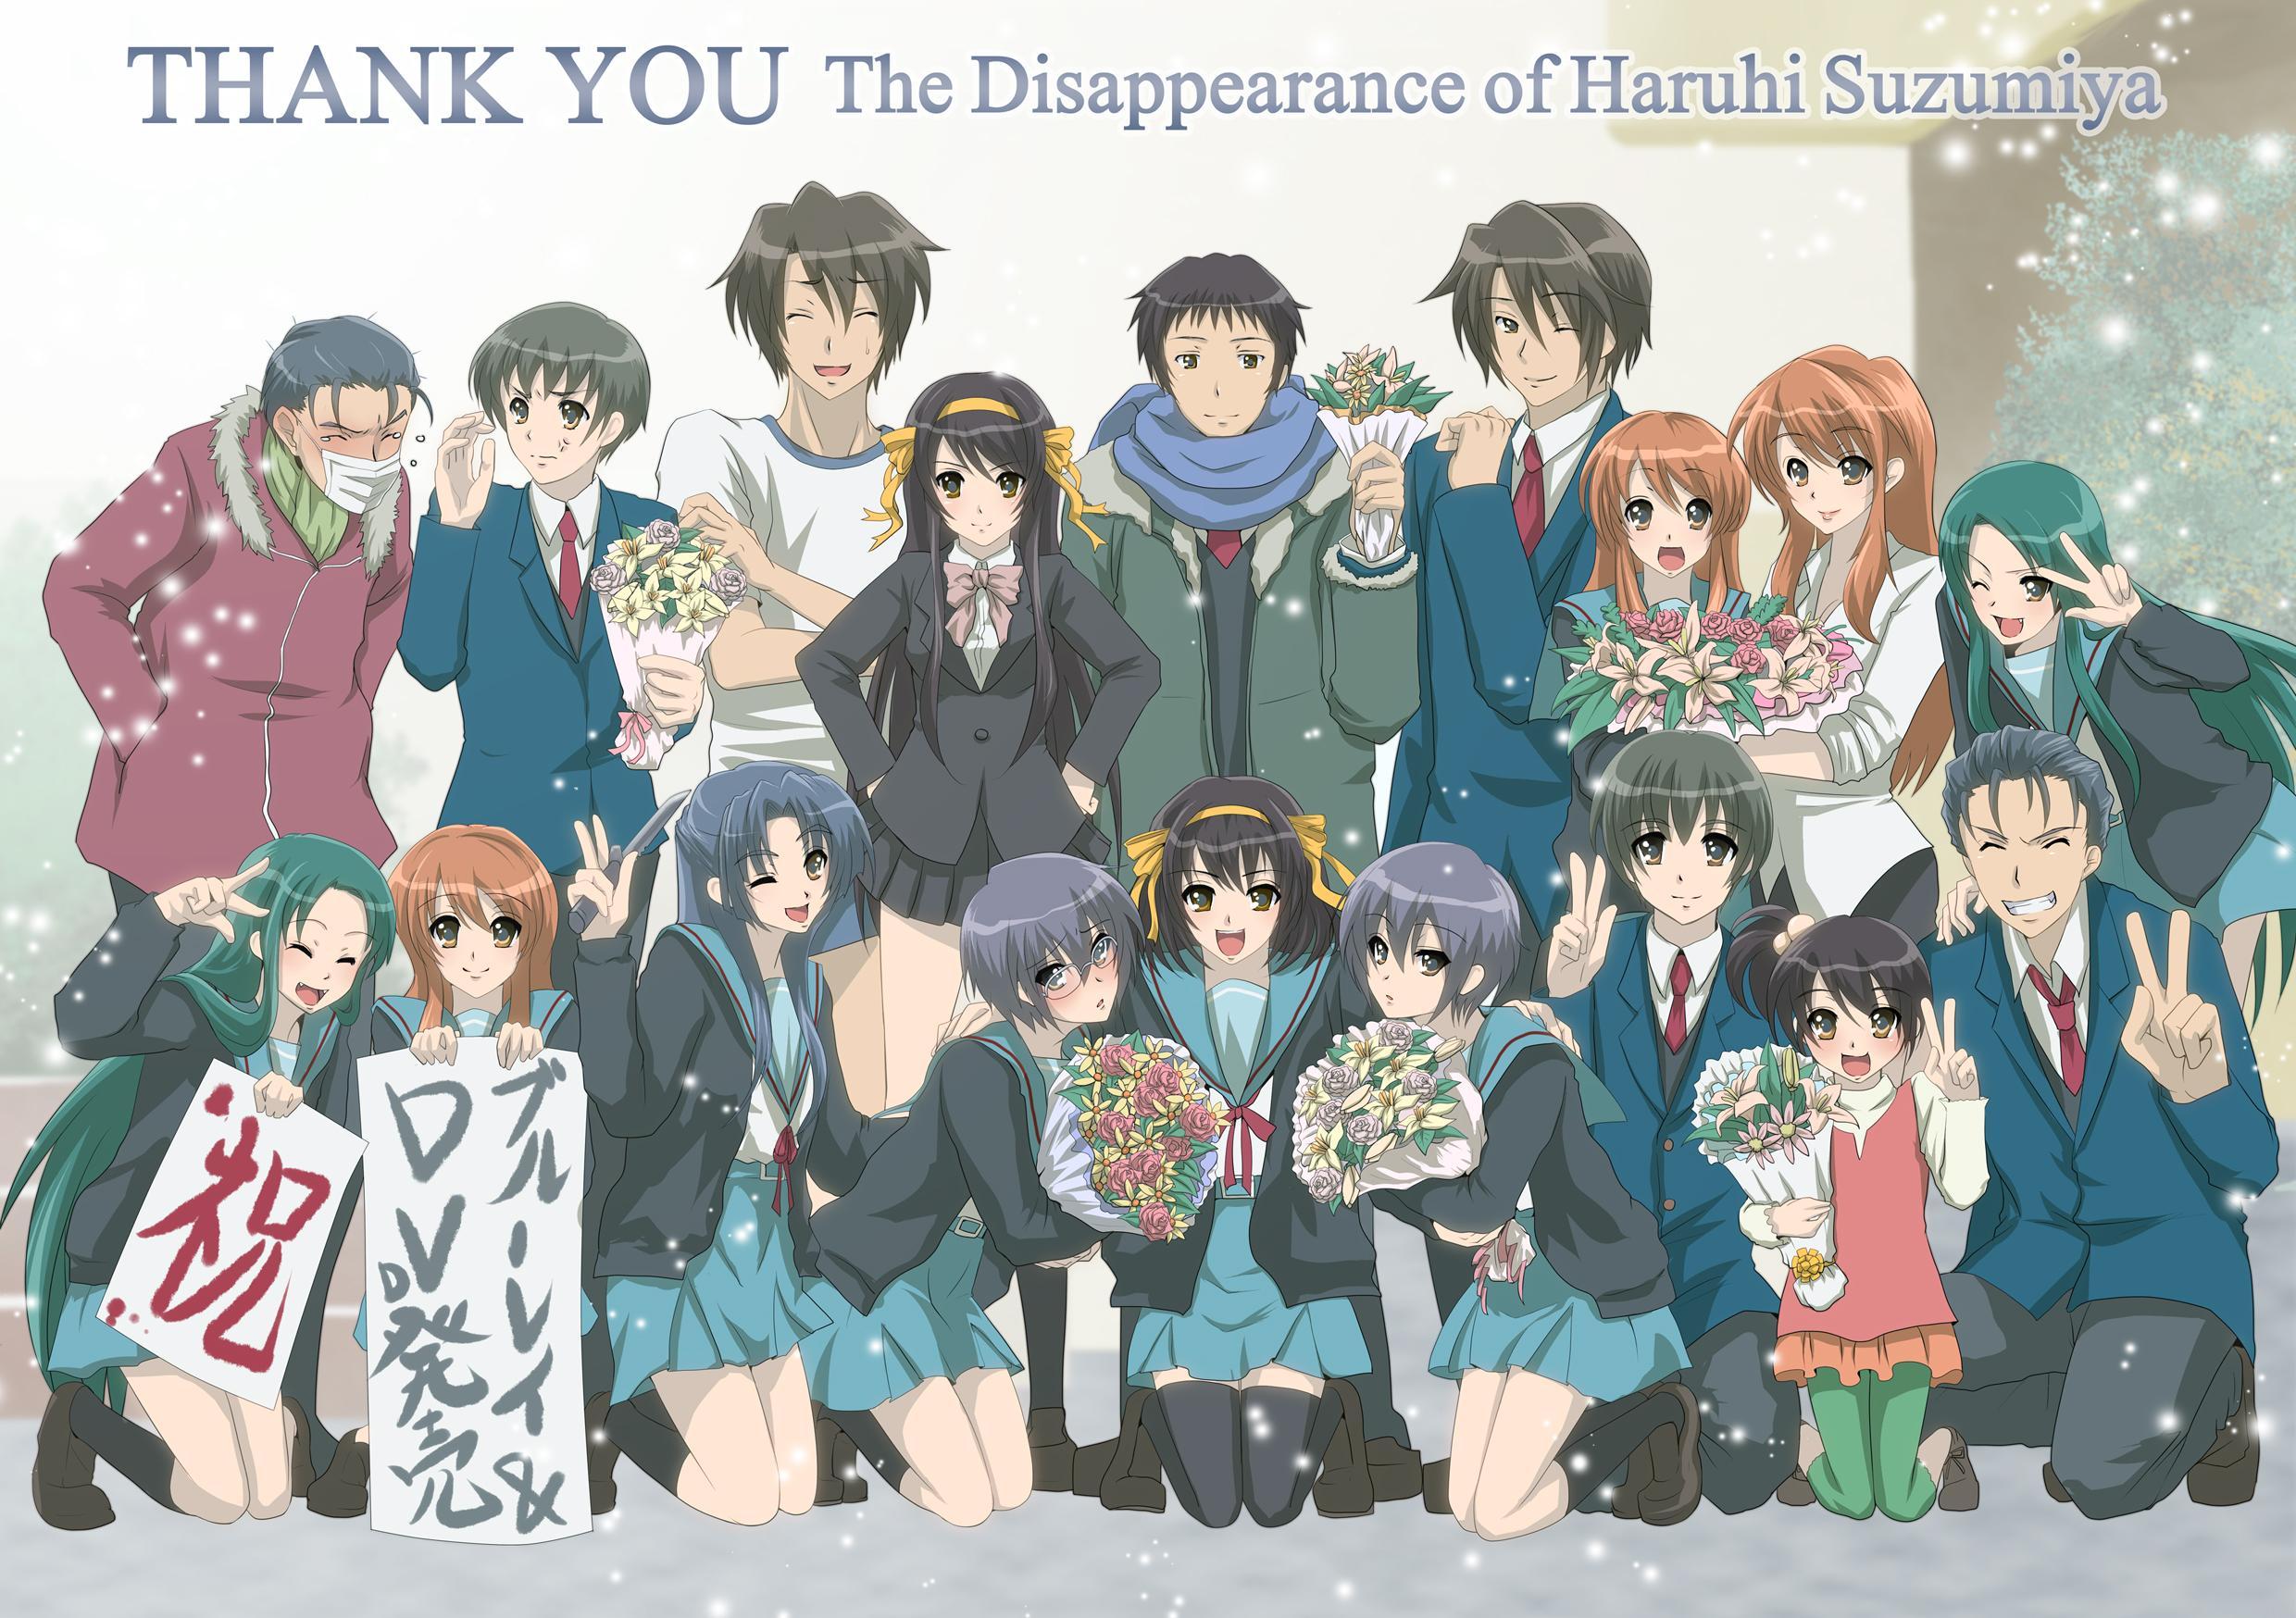 The Disappearance of Haruhi Suzumiya Wallpaper The Disappearance of